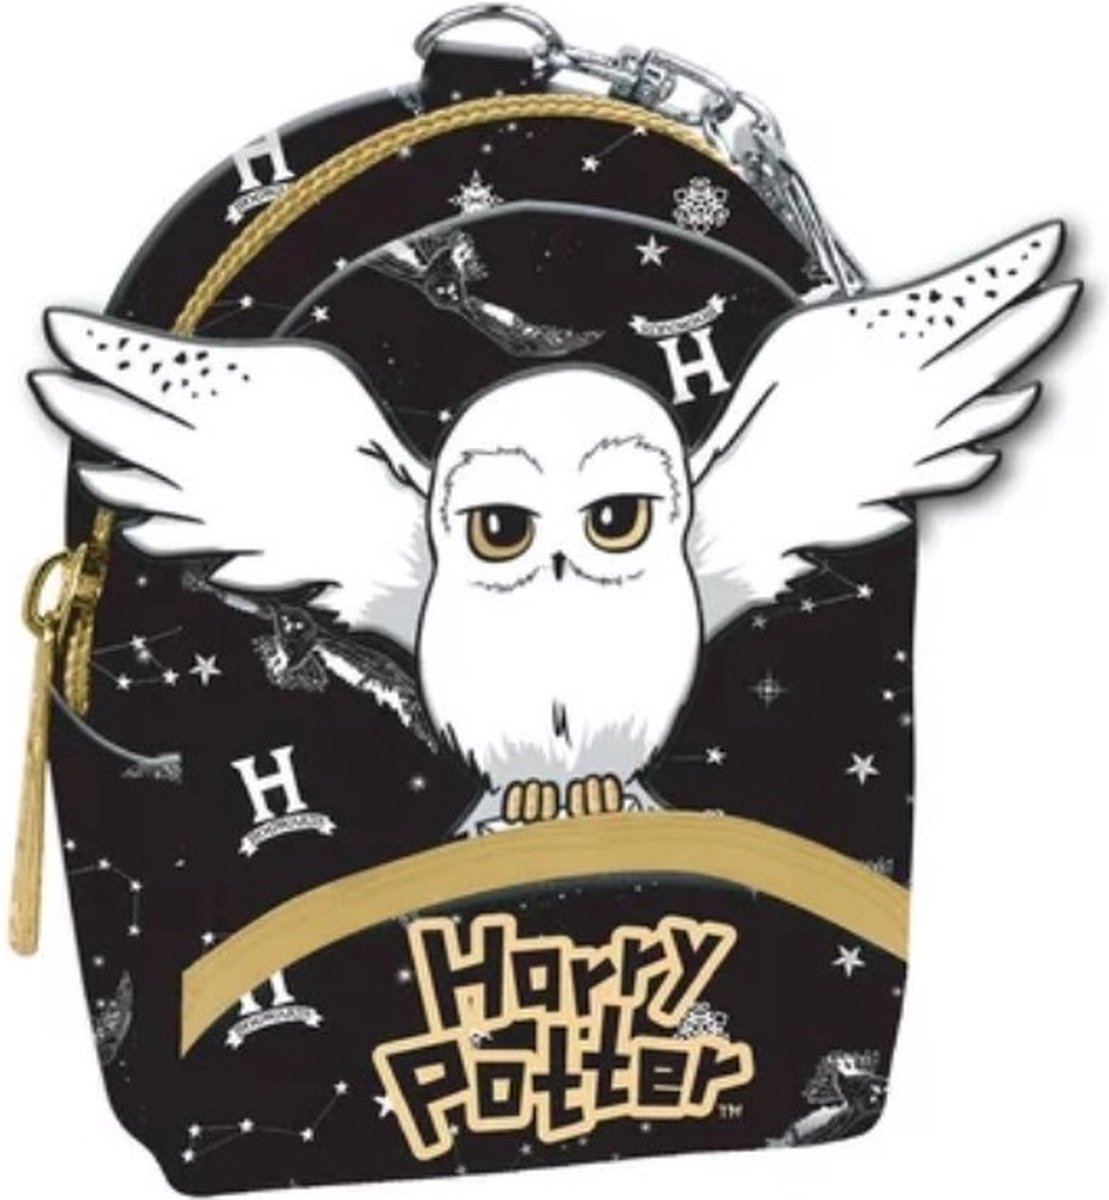 Mini Harry Potter rugzak gevuld met briefpapier en accessoires - 10cm - 1 stuk assorti uitgeleverd